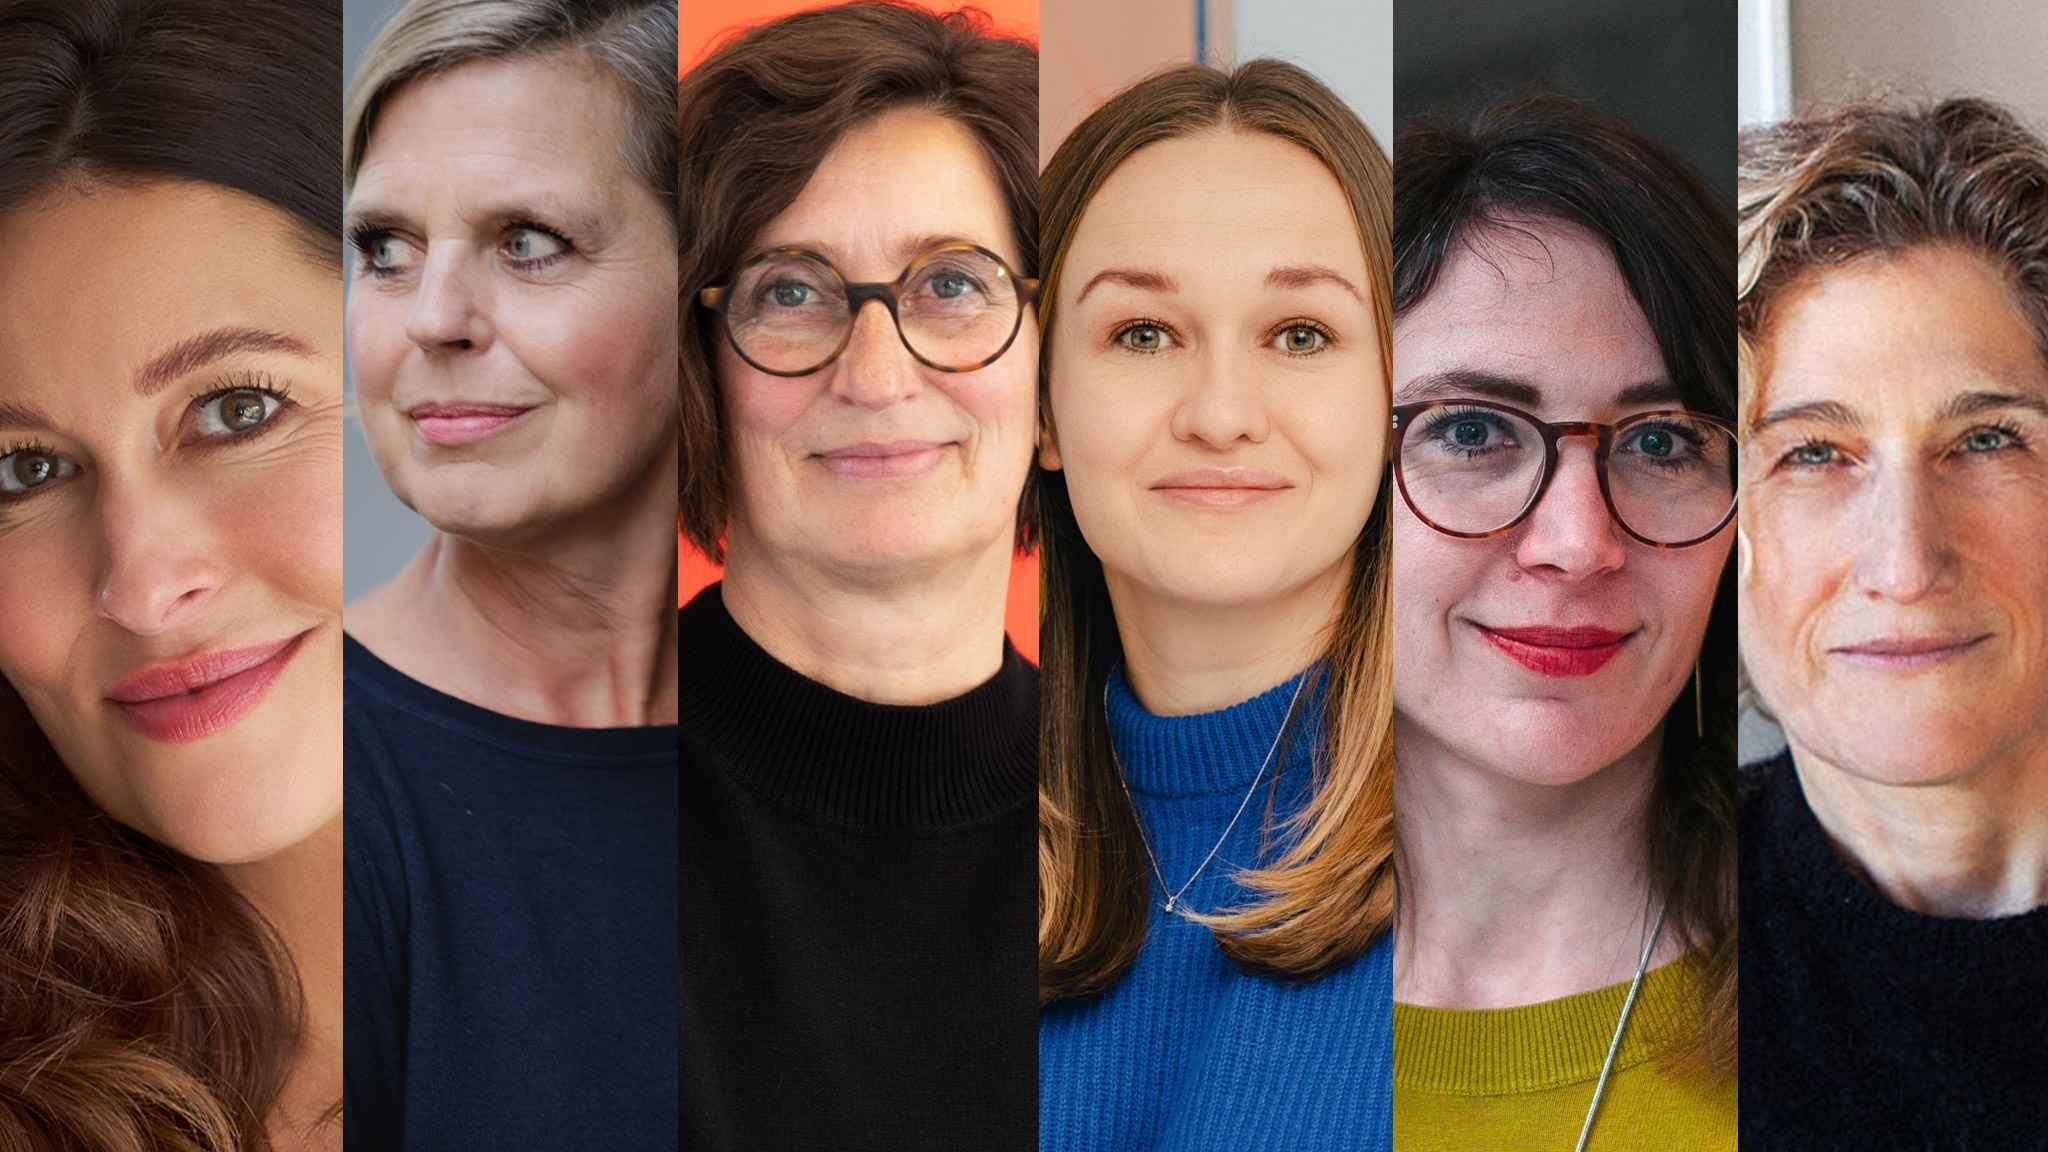 Sechs Frauen schildern, was der Weltfrauentag für sie bedeutet, was sich verändert hat und was die Gesellschaft für mehr Gleichberechtigung tun kann.